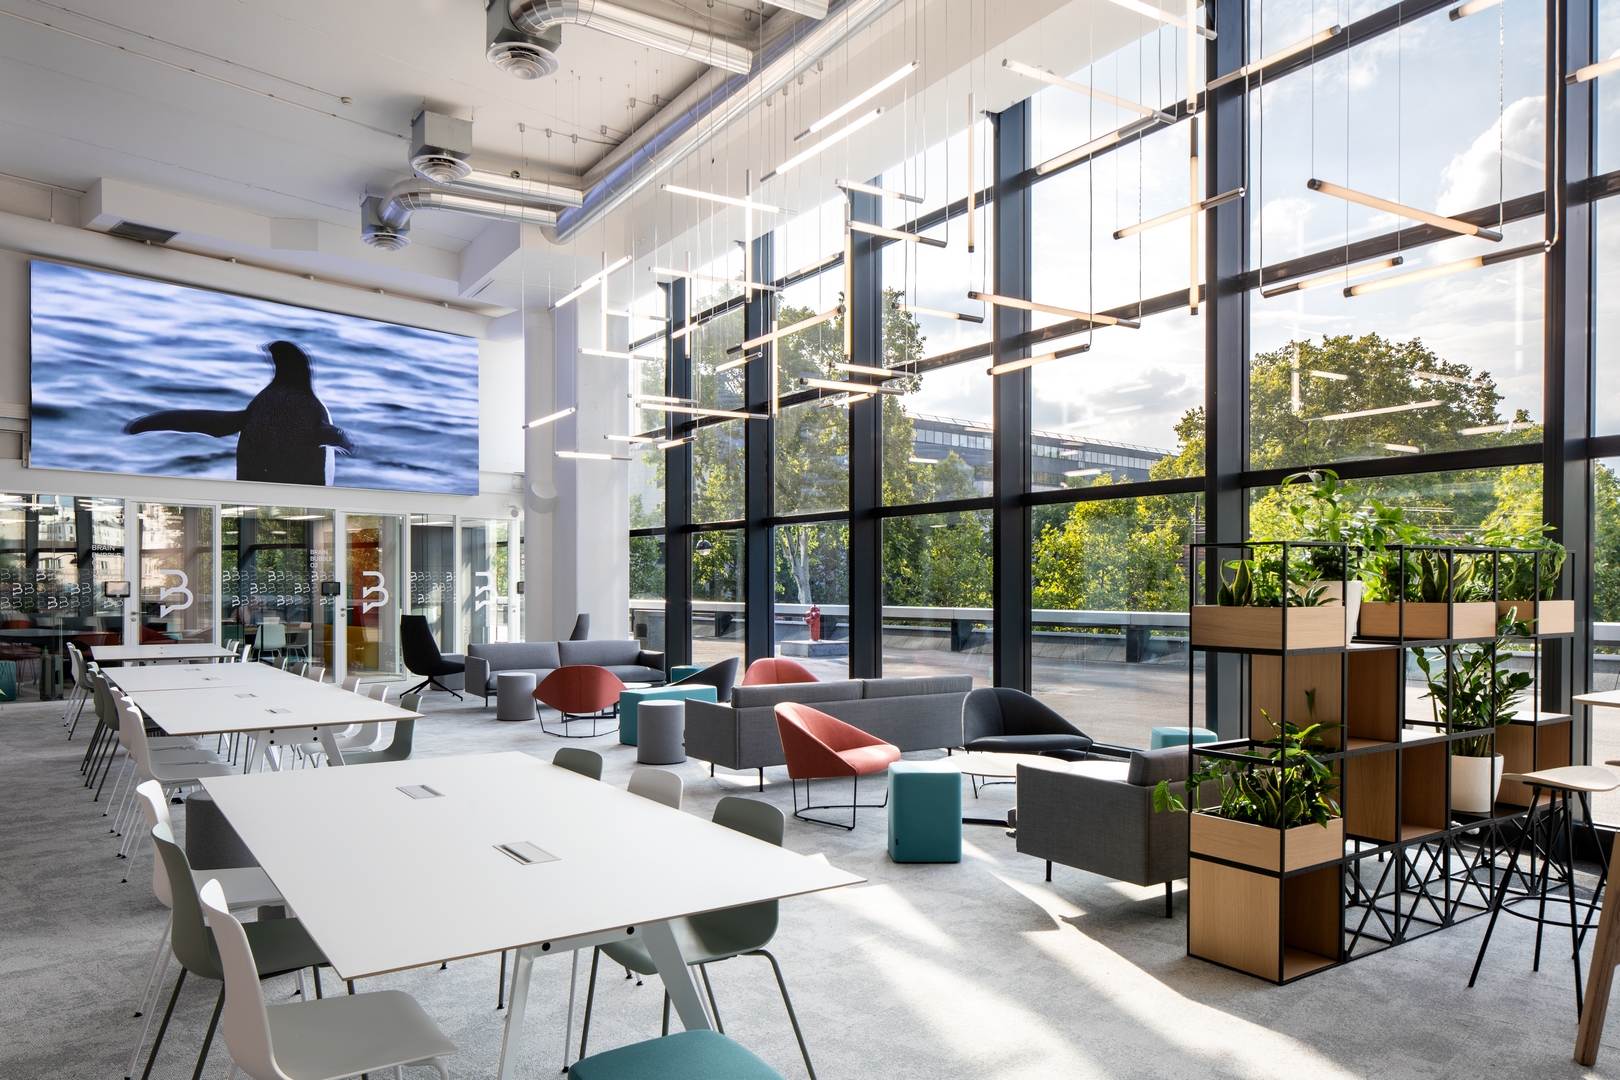 Nouveau campus pour Kedge Business School, créer une expérience étudiante augmentée dans un lieu dédié à l'innovation pédagogique. | Lonsdale Design